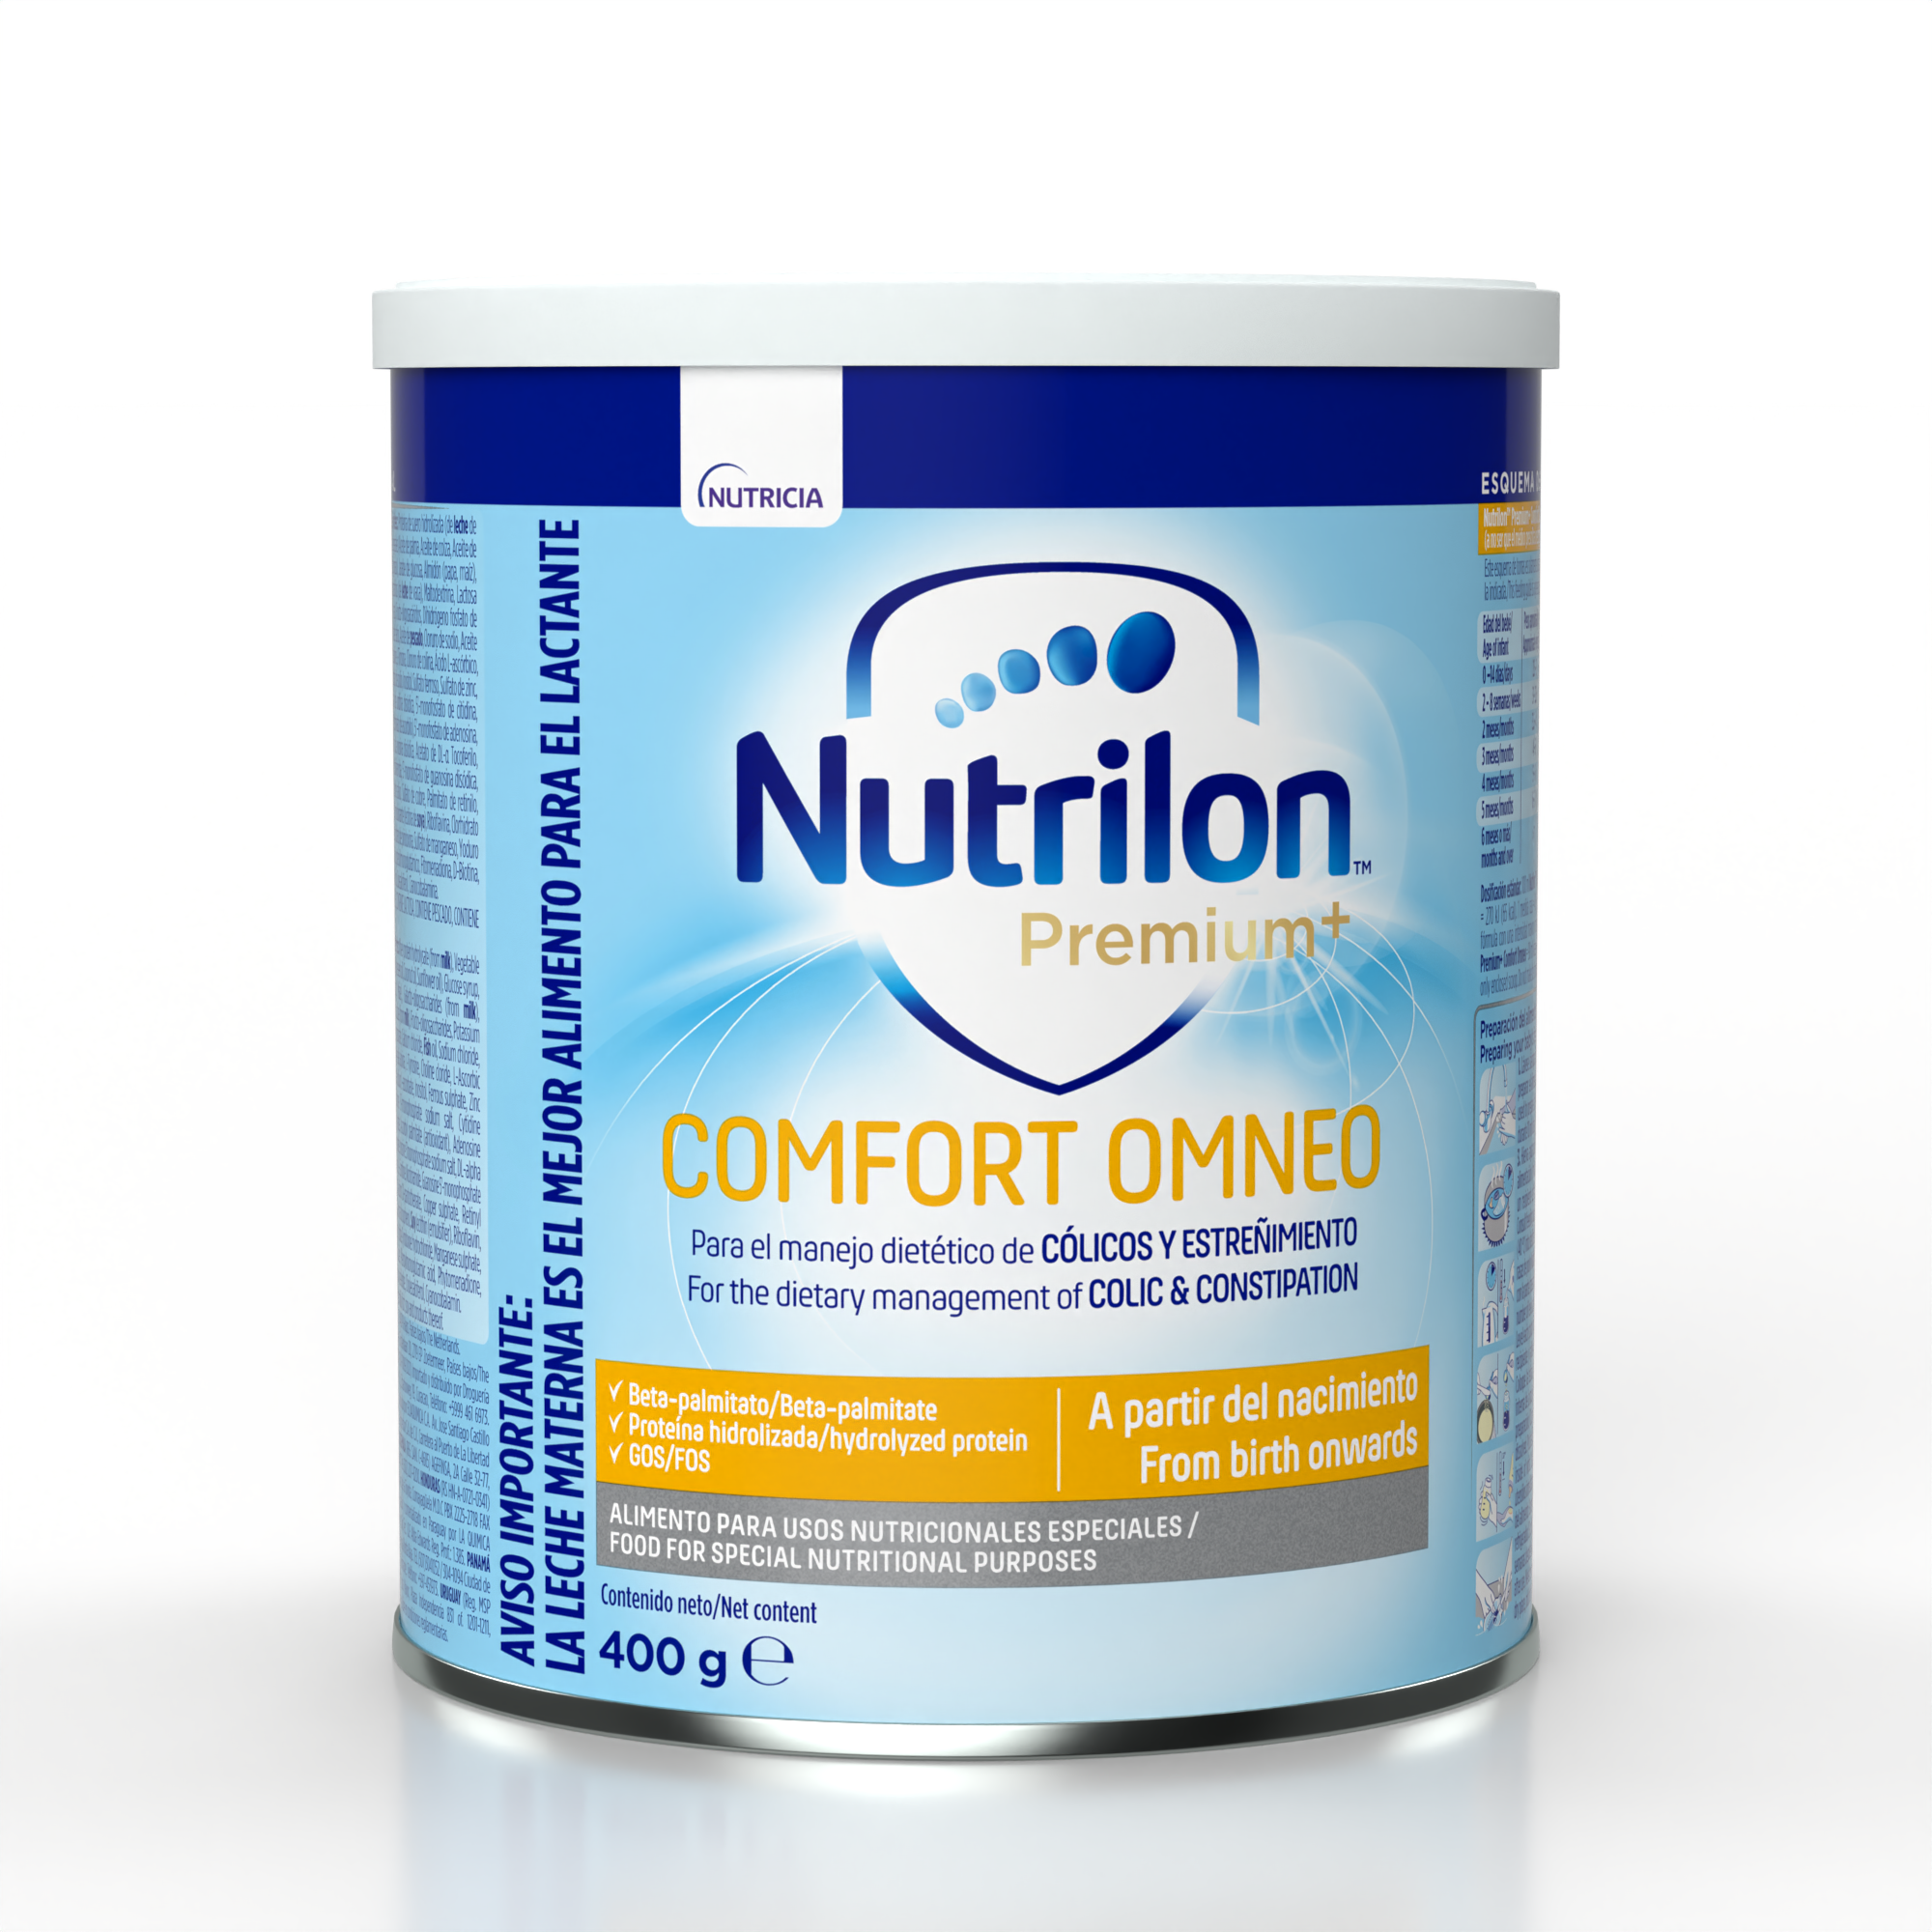 Nutrilon Premium+ Comfort Omneo